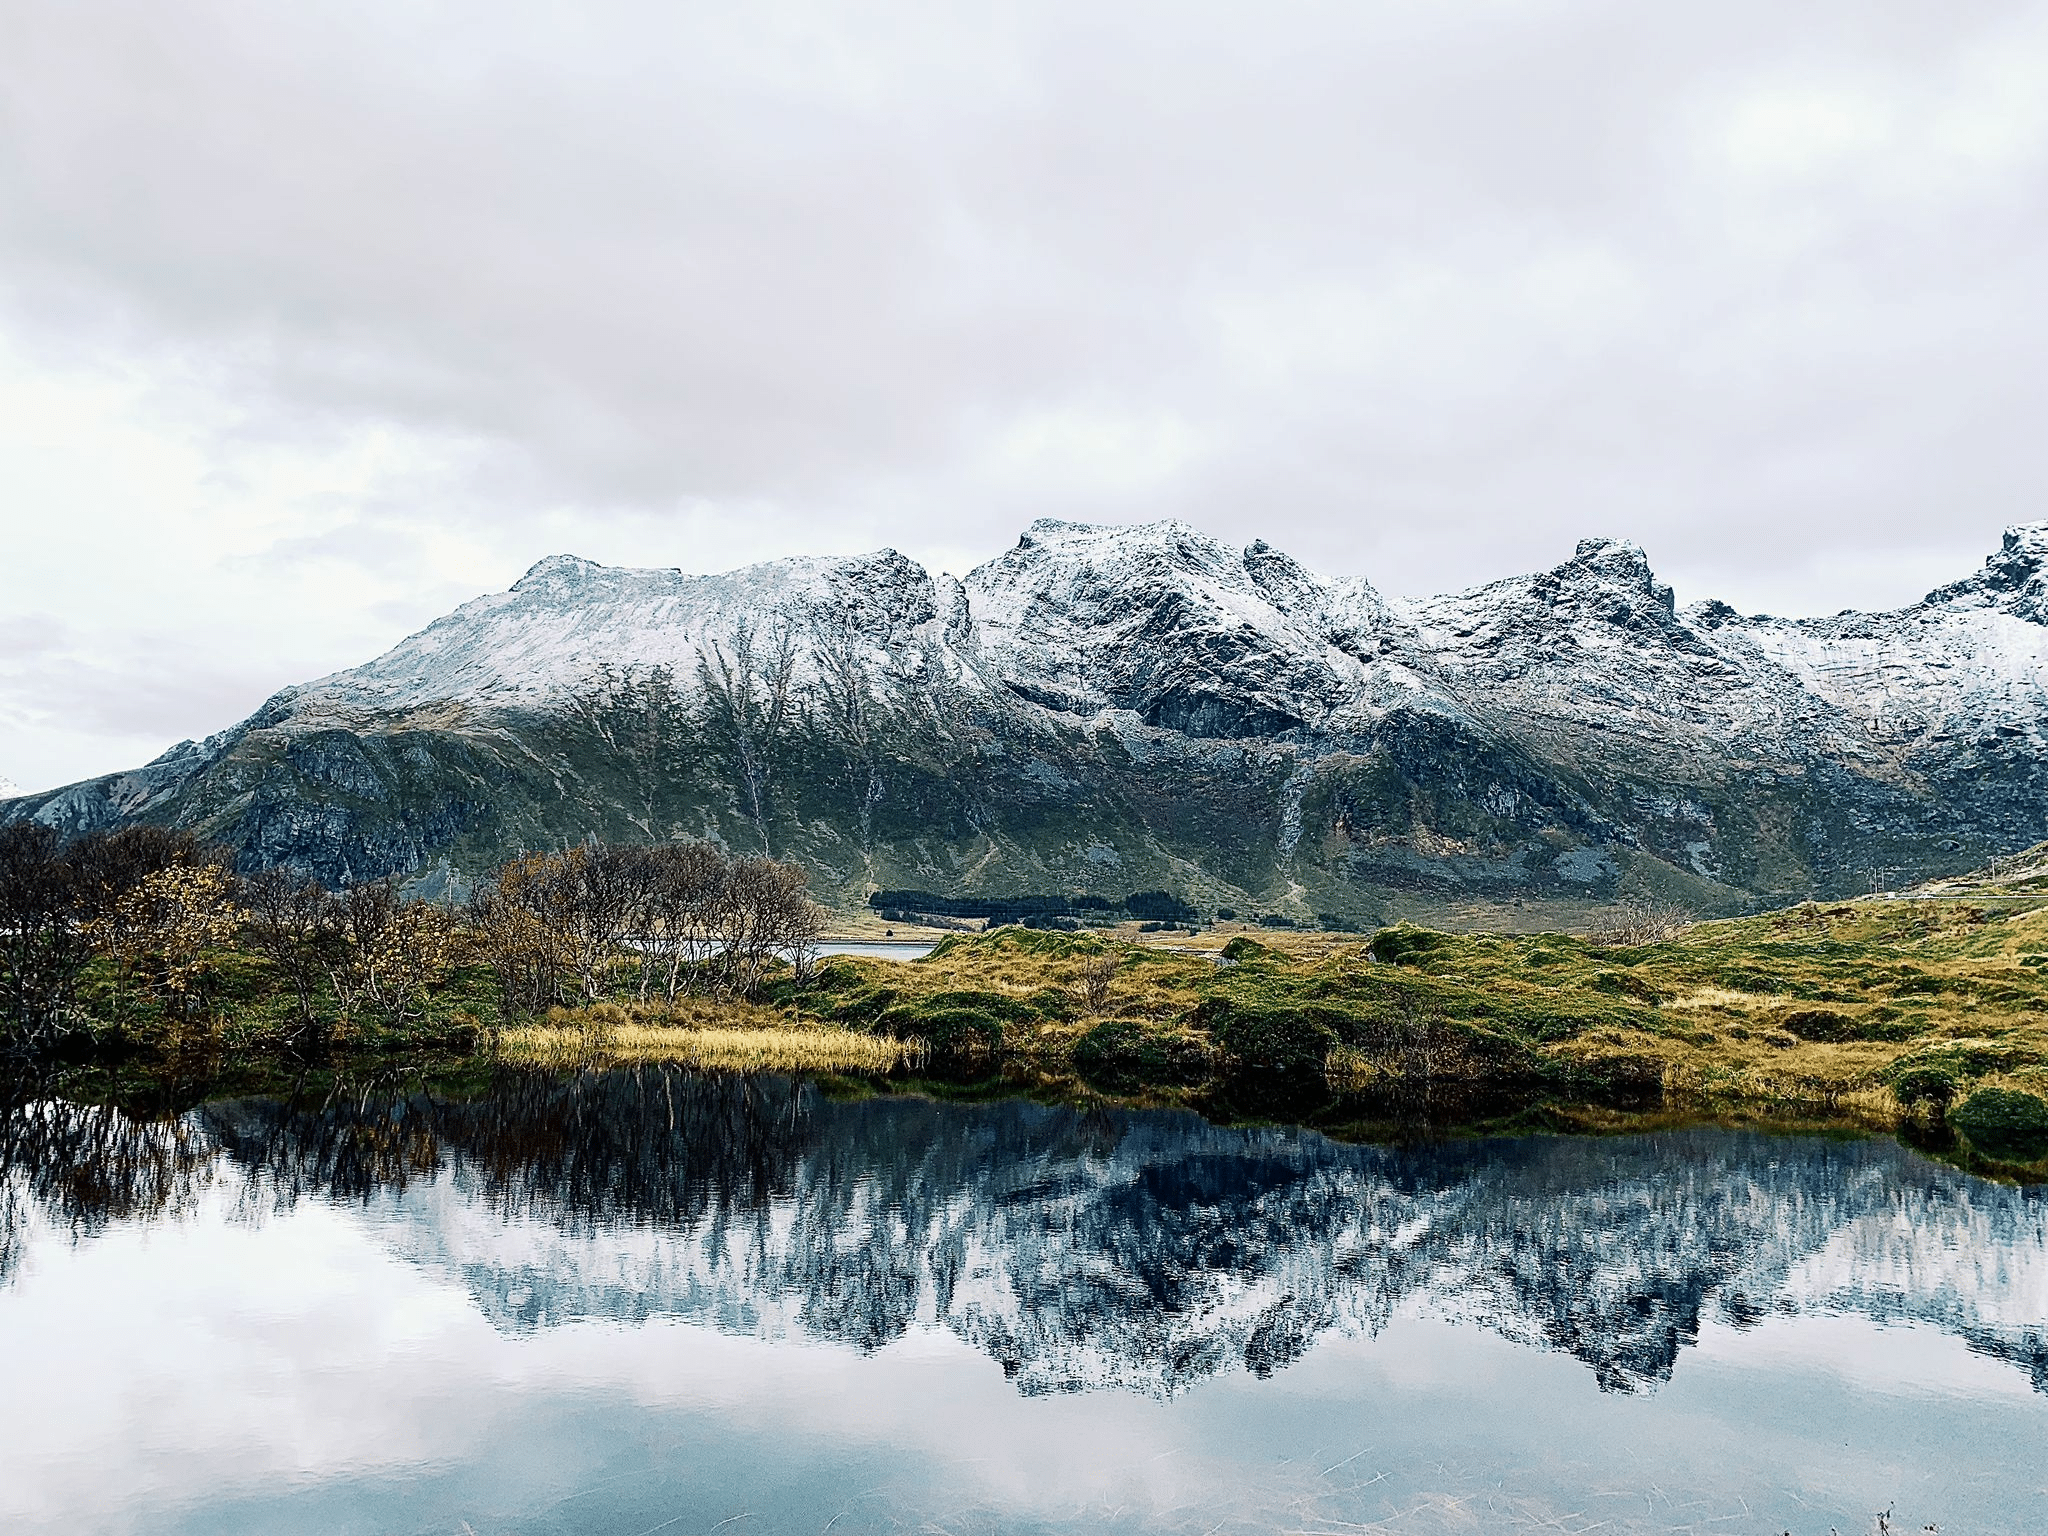 Lofoten, Norge